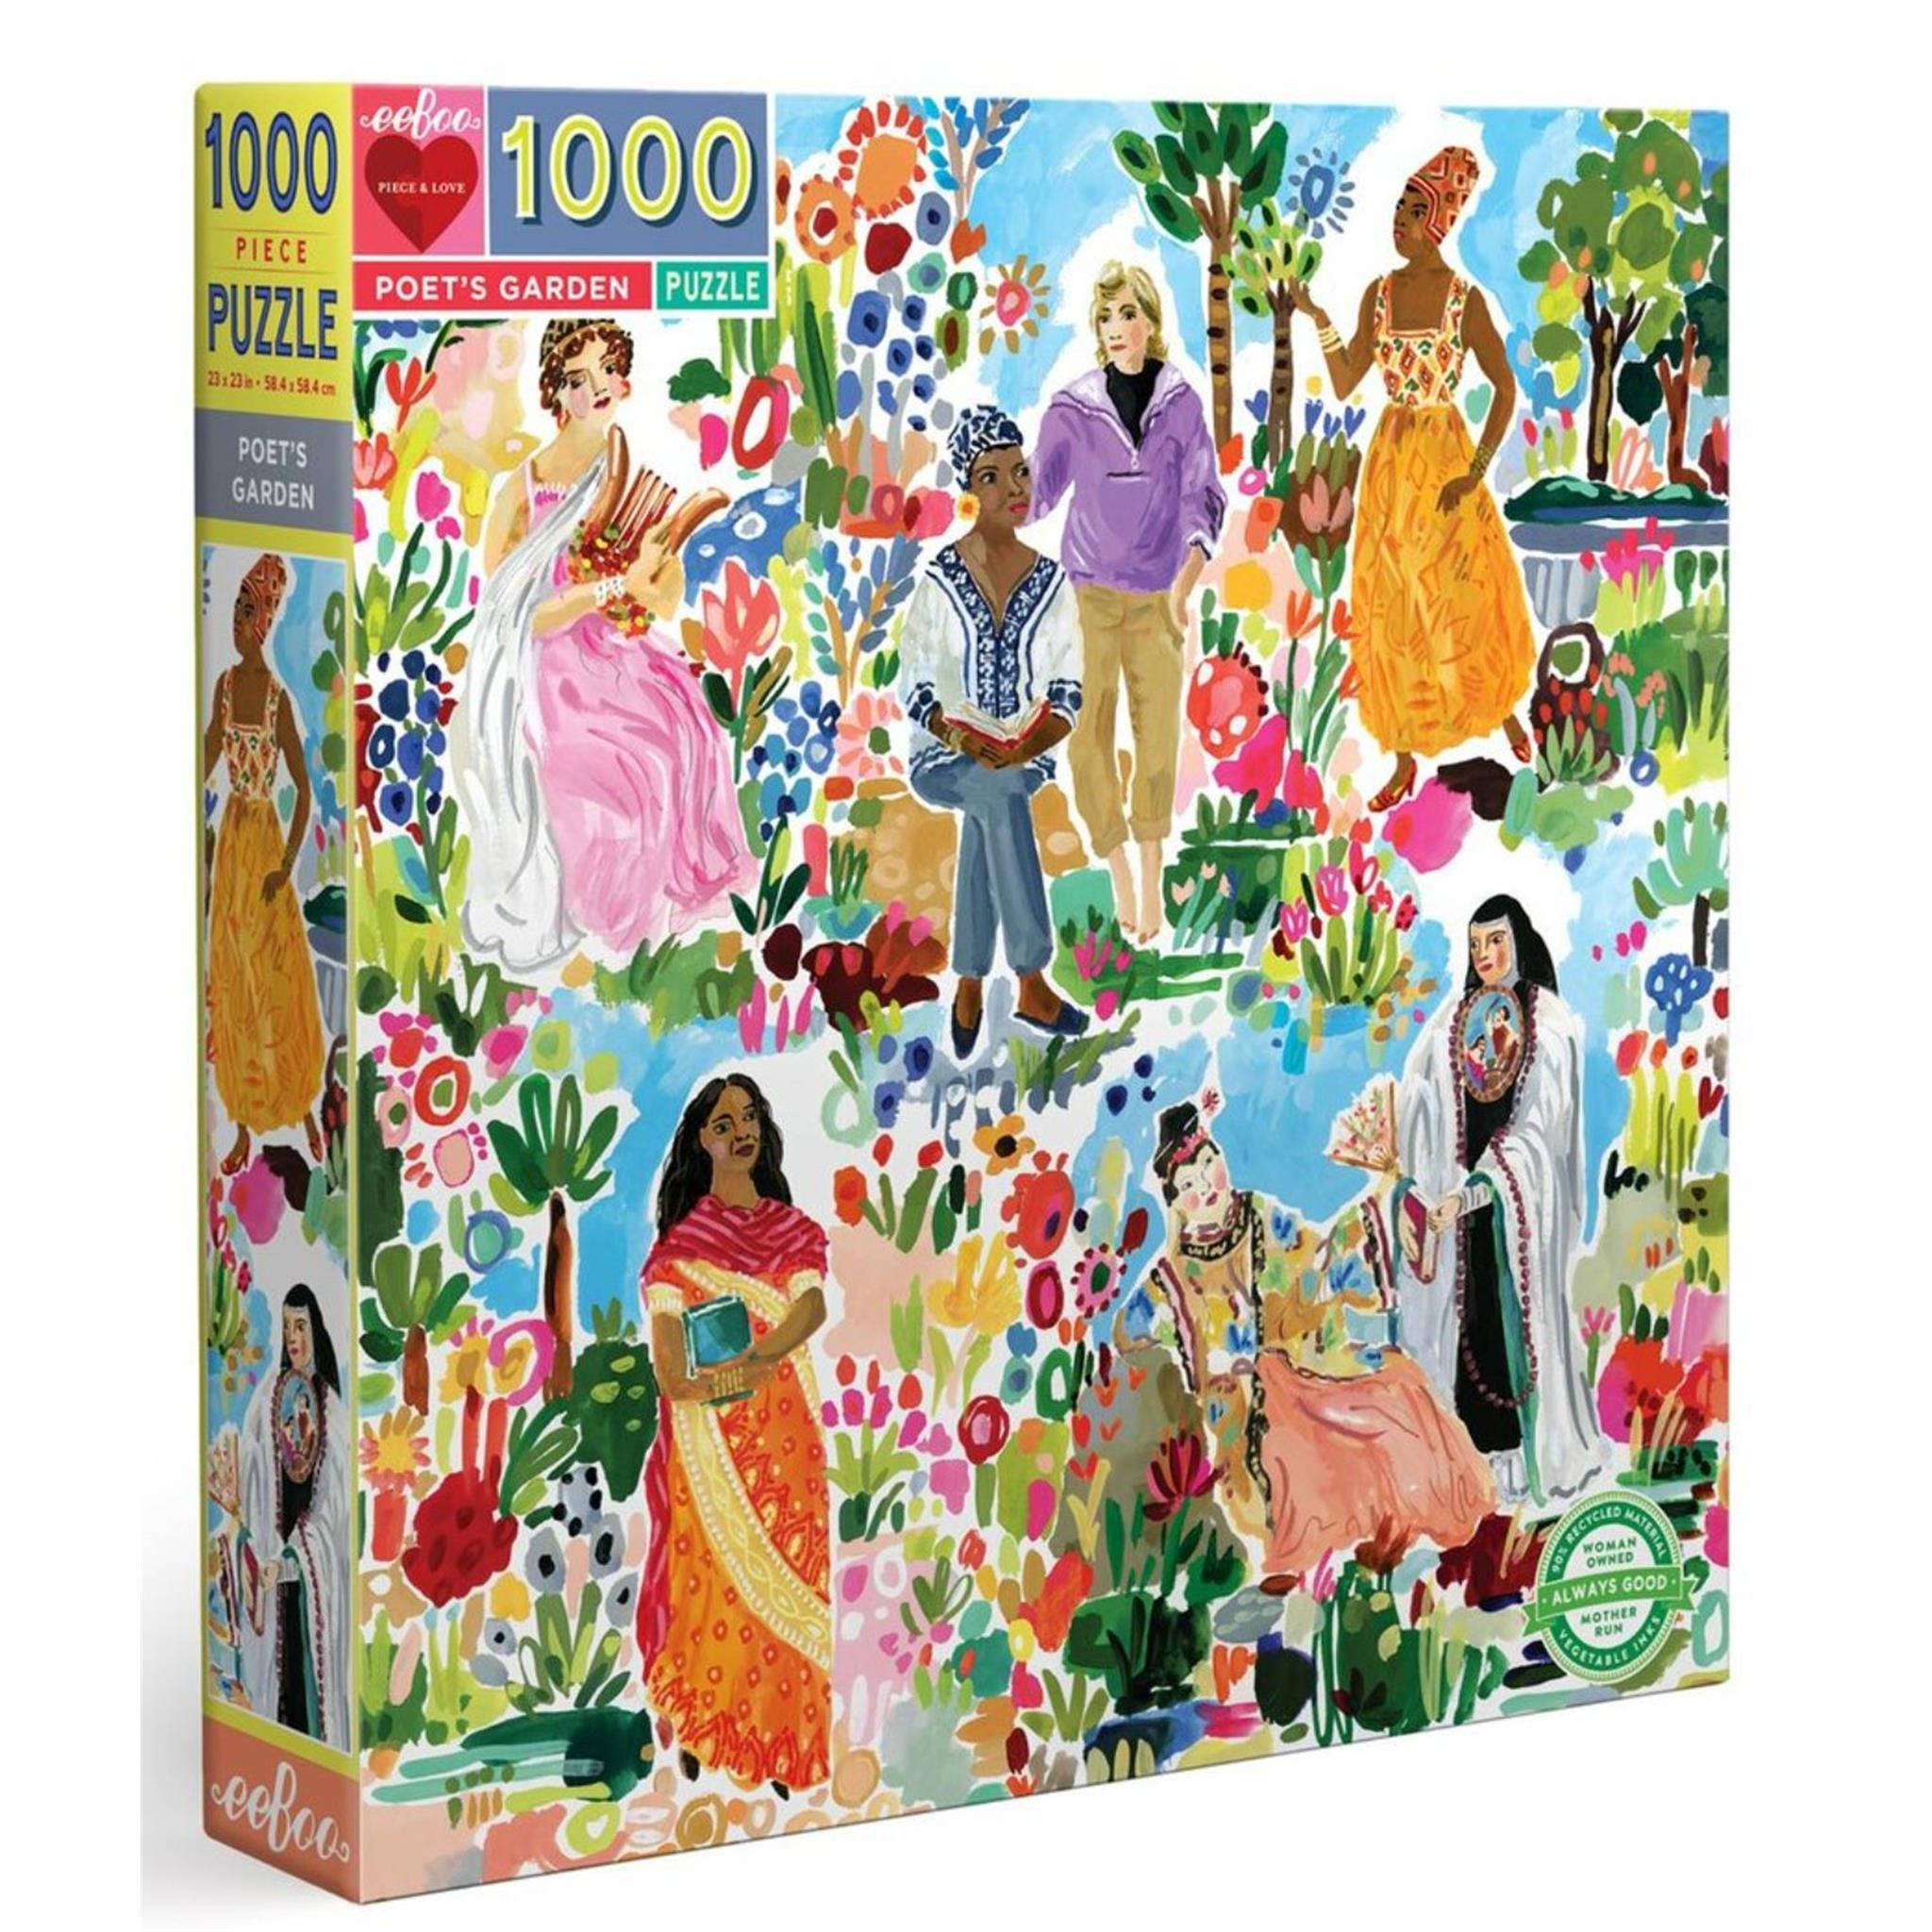 Poets Garden 1000 Piece Puzzle